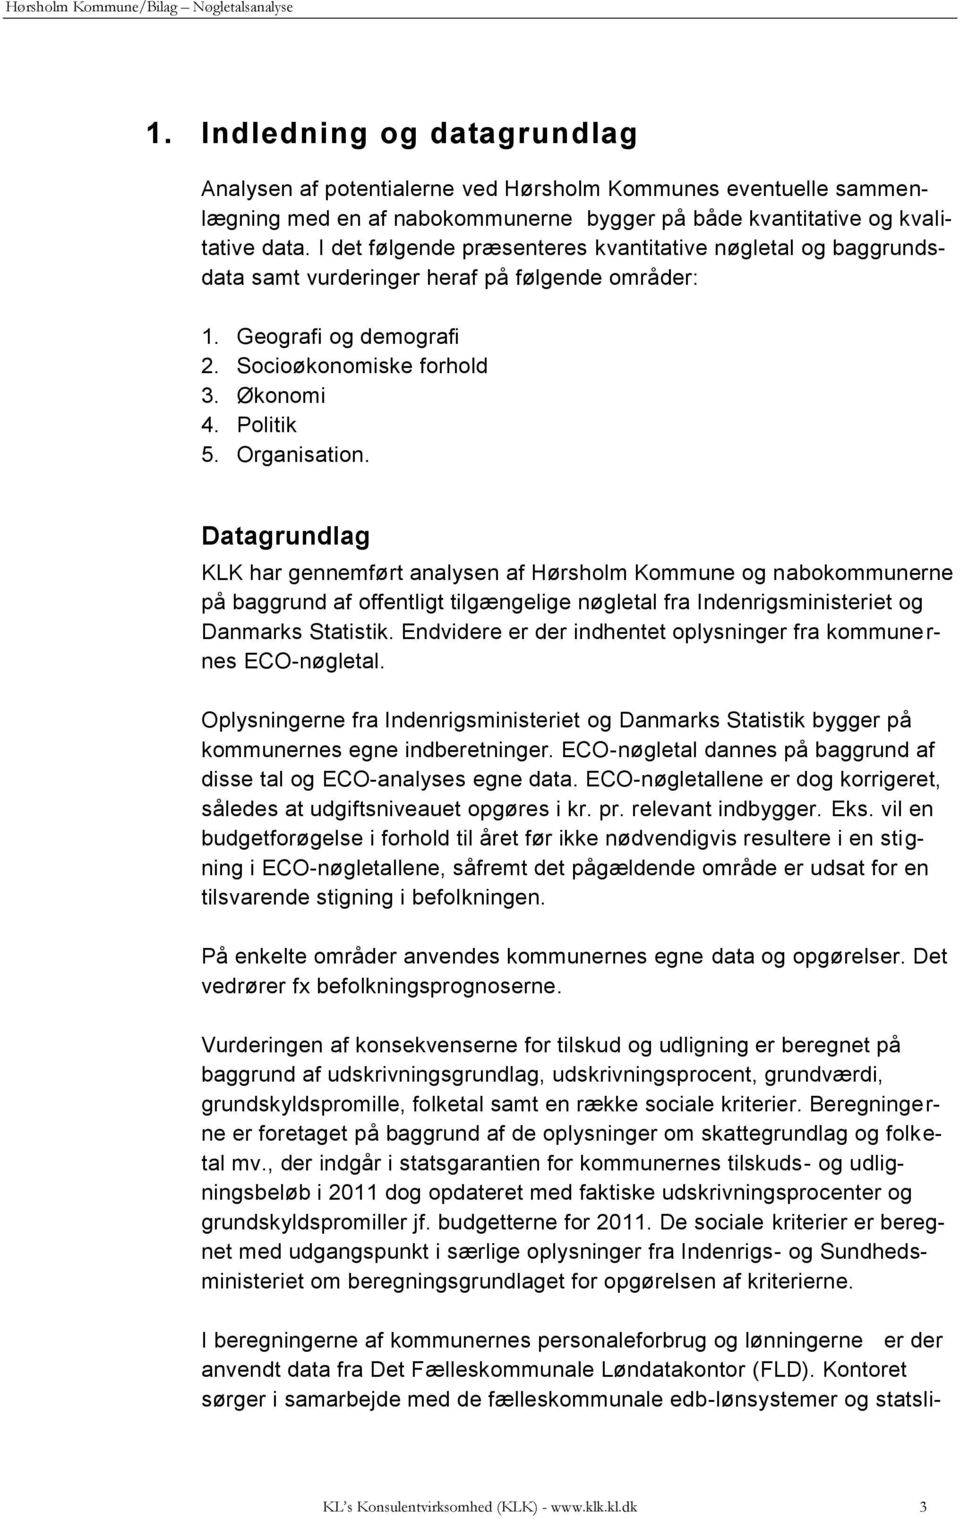 Datagrundlag KLK har gennemført analysen af Hørsholm Kommune og nabokommunerne på baggrund af offentligt tilgængelige nøgletal fra Indenrigsministeriet og Danmarks Statistik.